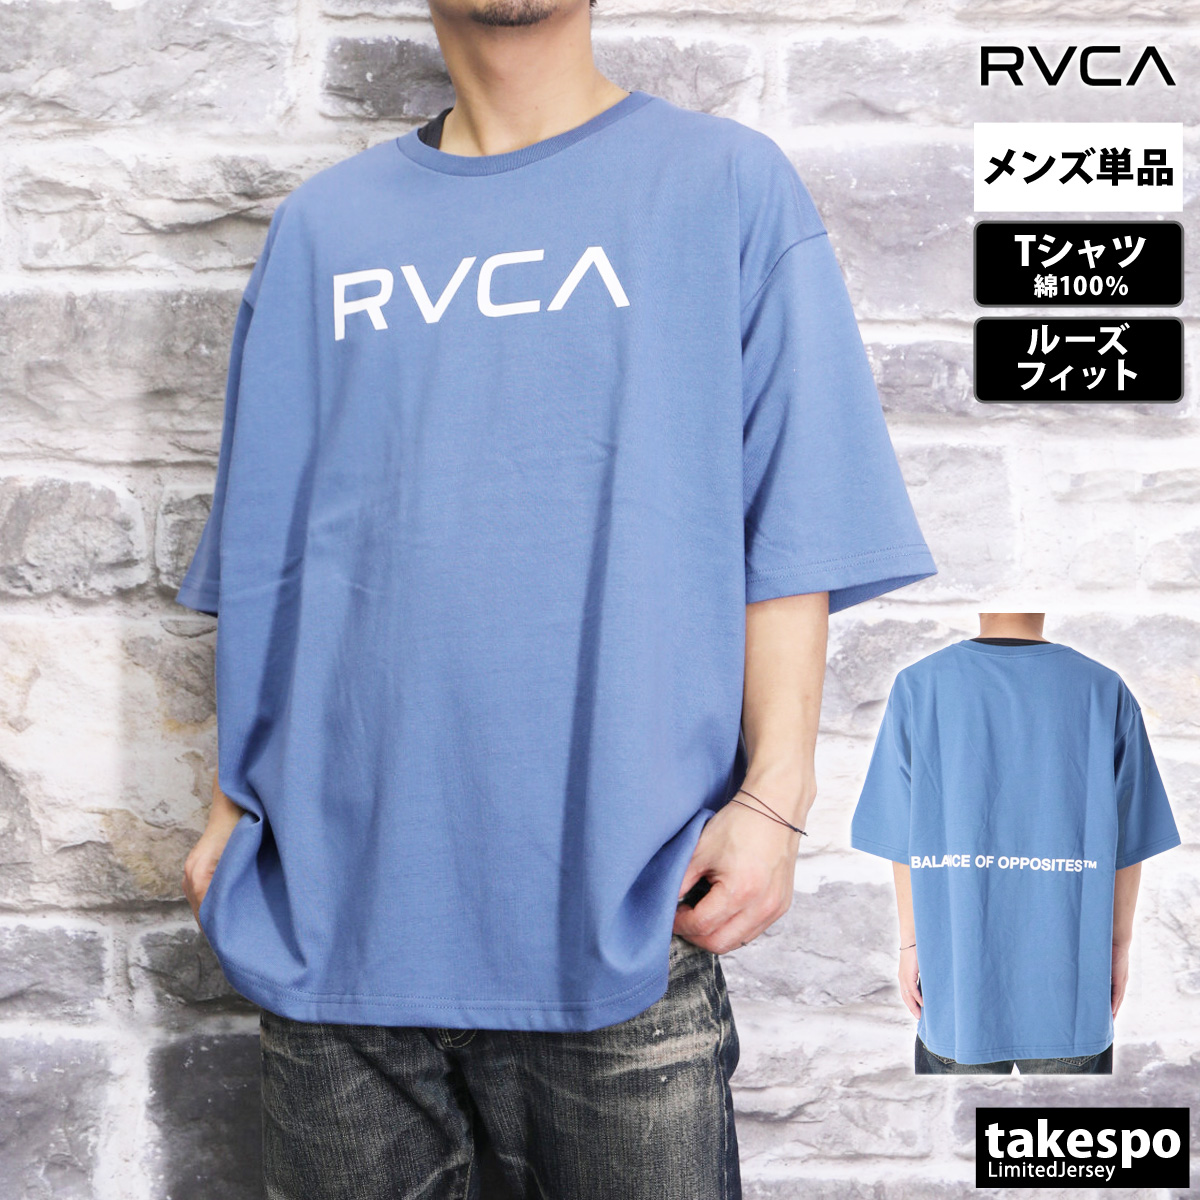 ルーカ Tシャツ メンズ 上 RVCA 半袖 バックプリント付き ゆったり オーバーサイズ コットン...